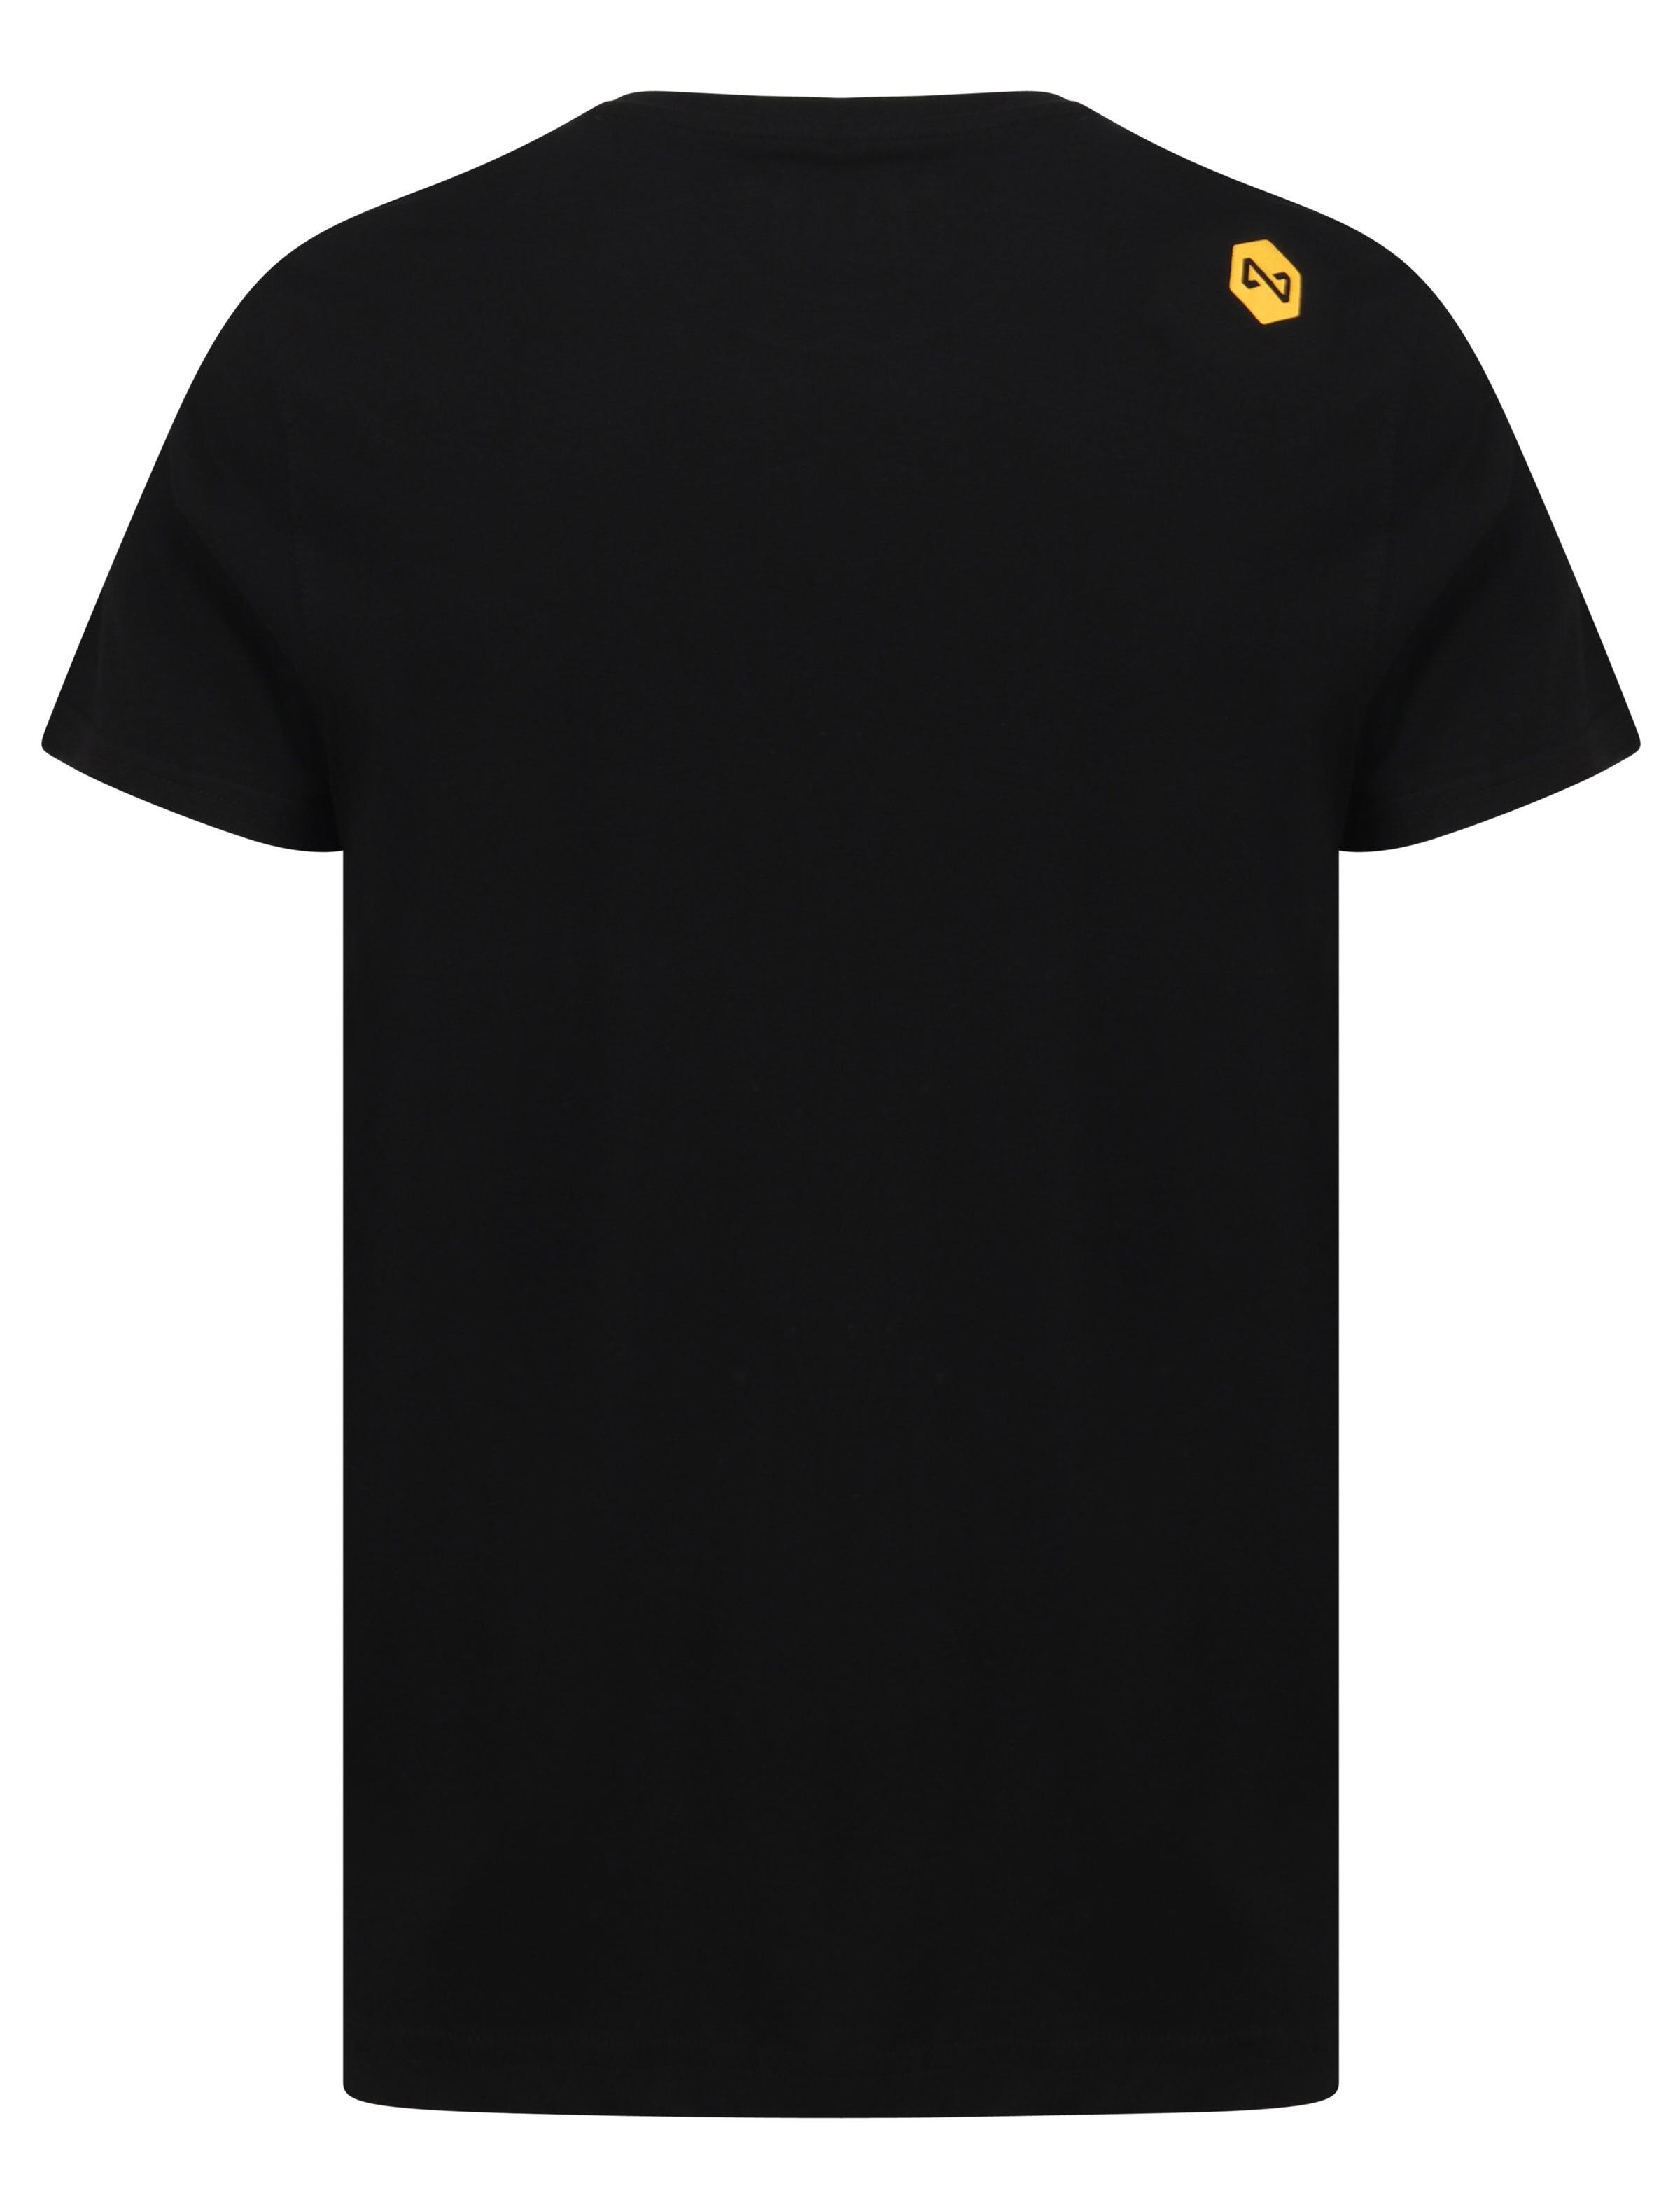 Kurt Black T-Shirt 2/4